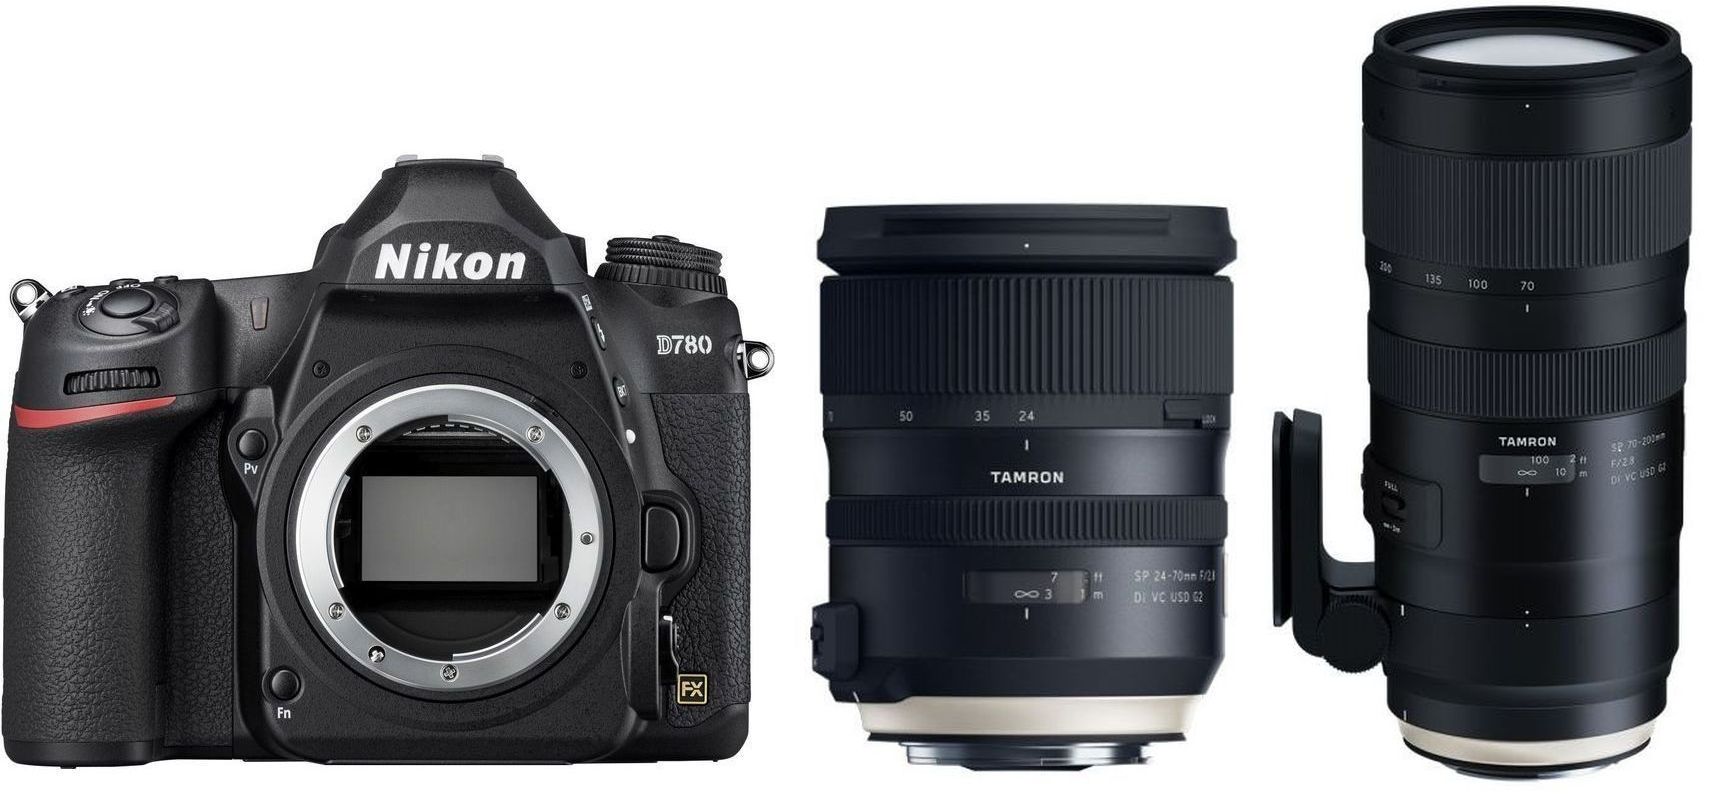 Technical Specs Nikon D780 + Tamron 24-70mm f2.8 G2 + Tamron 